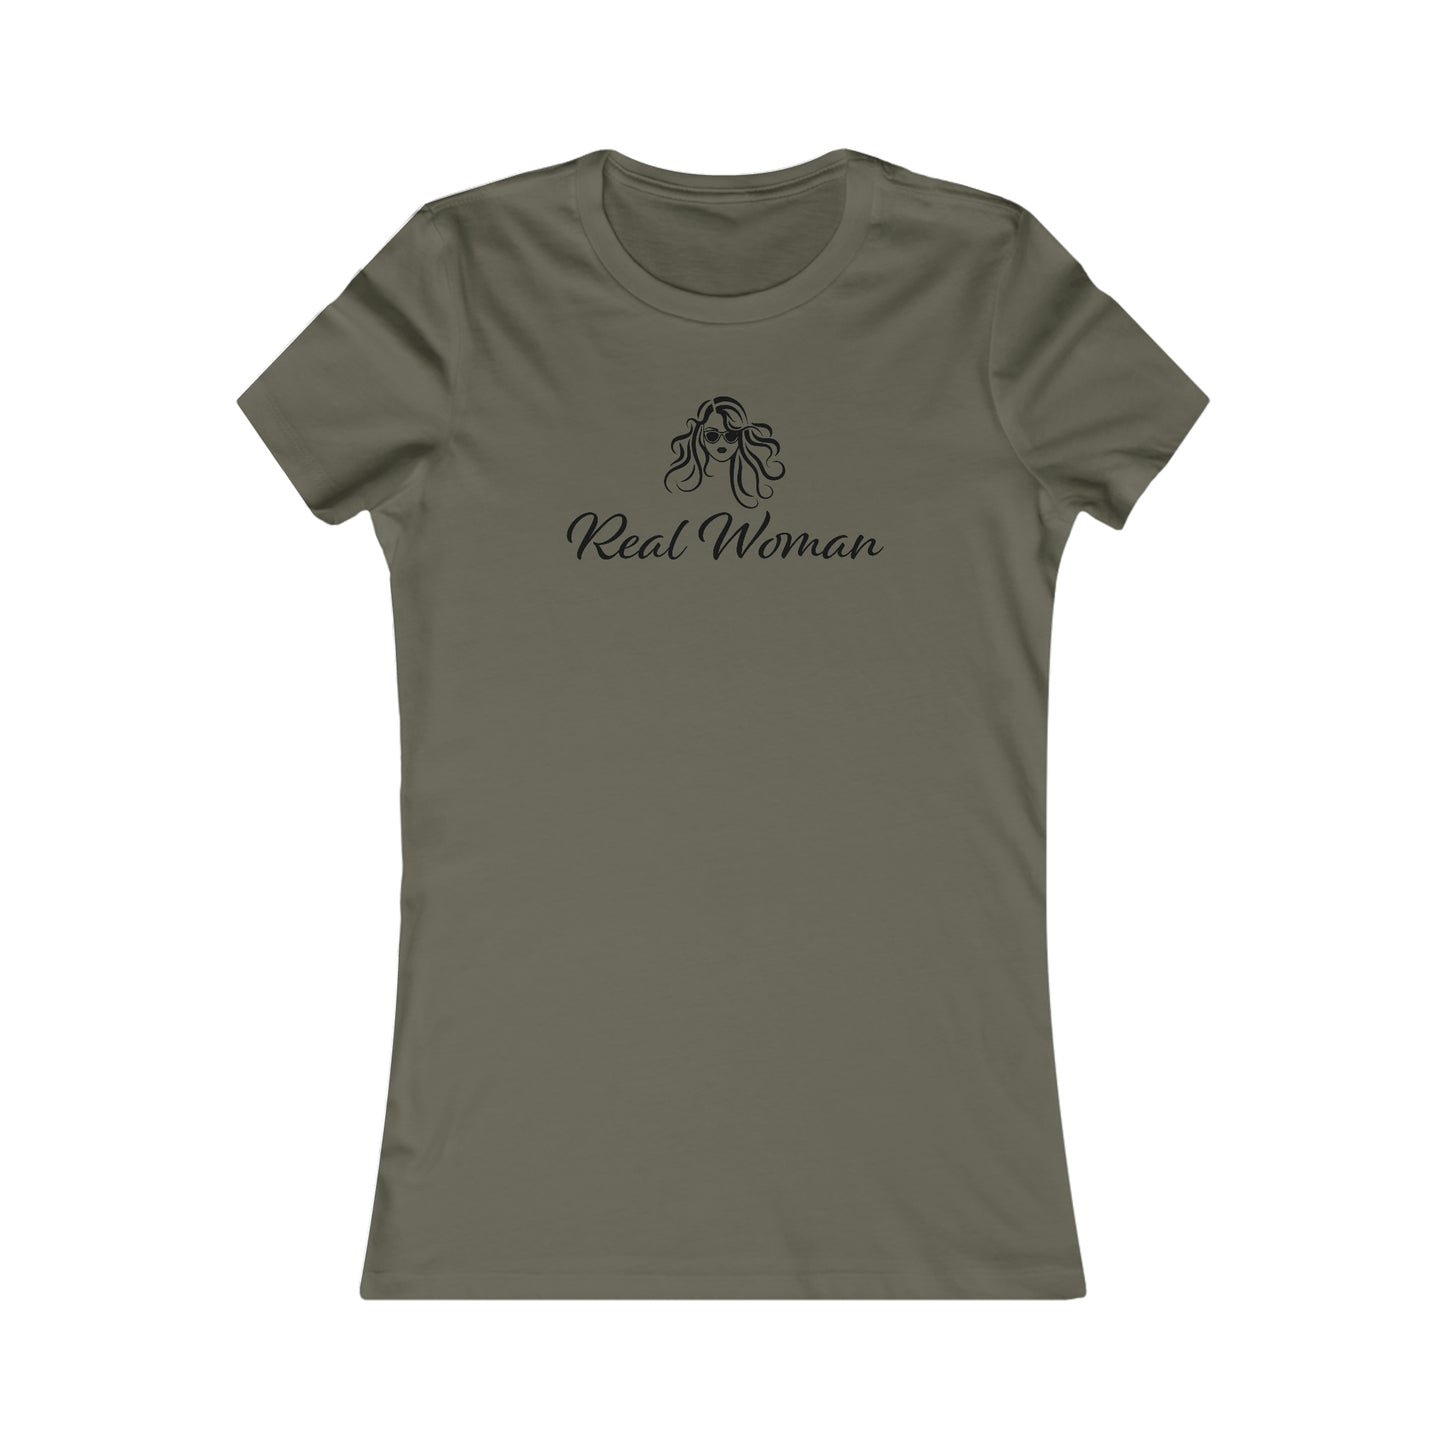 Real Woman T-Shirt For Genuine Woman TShirt For Women Aren't Men T Shirt For Ladies Shirt For Gift For Woman TShirt for Mother's Day Gift For Mom